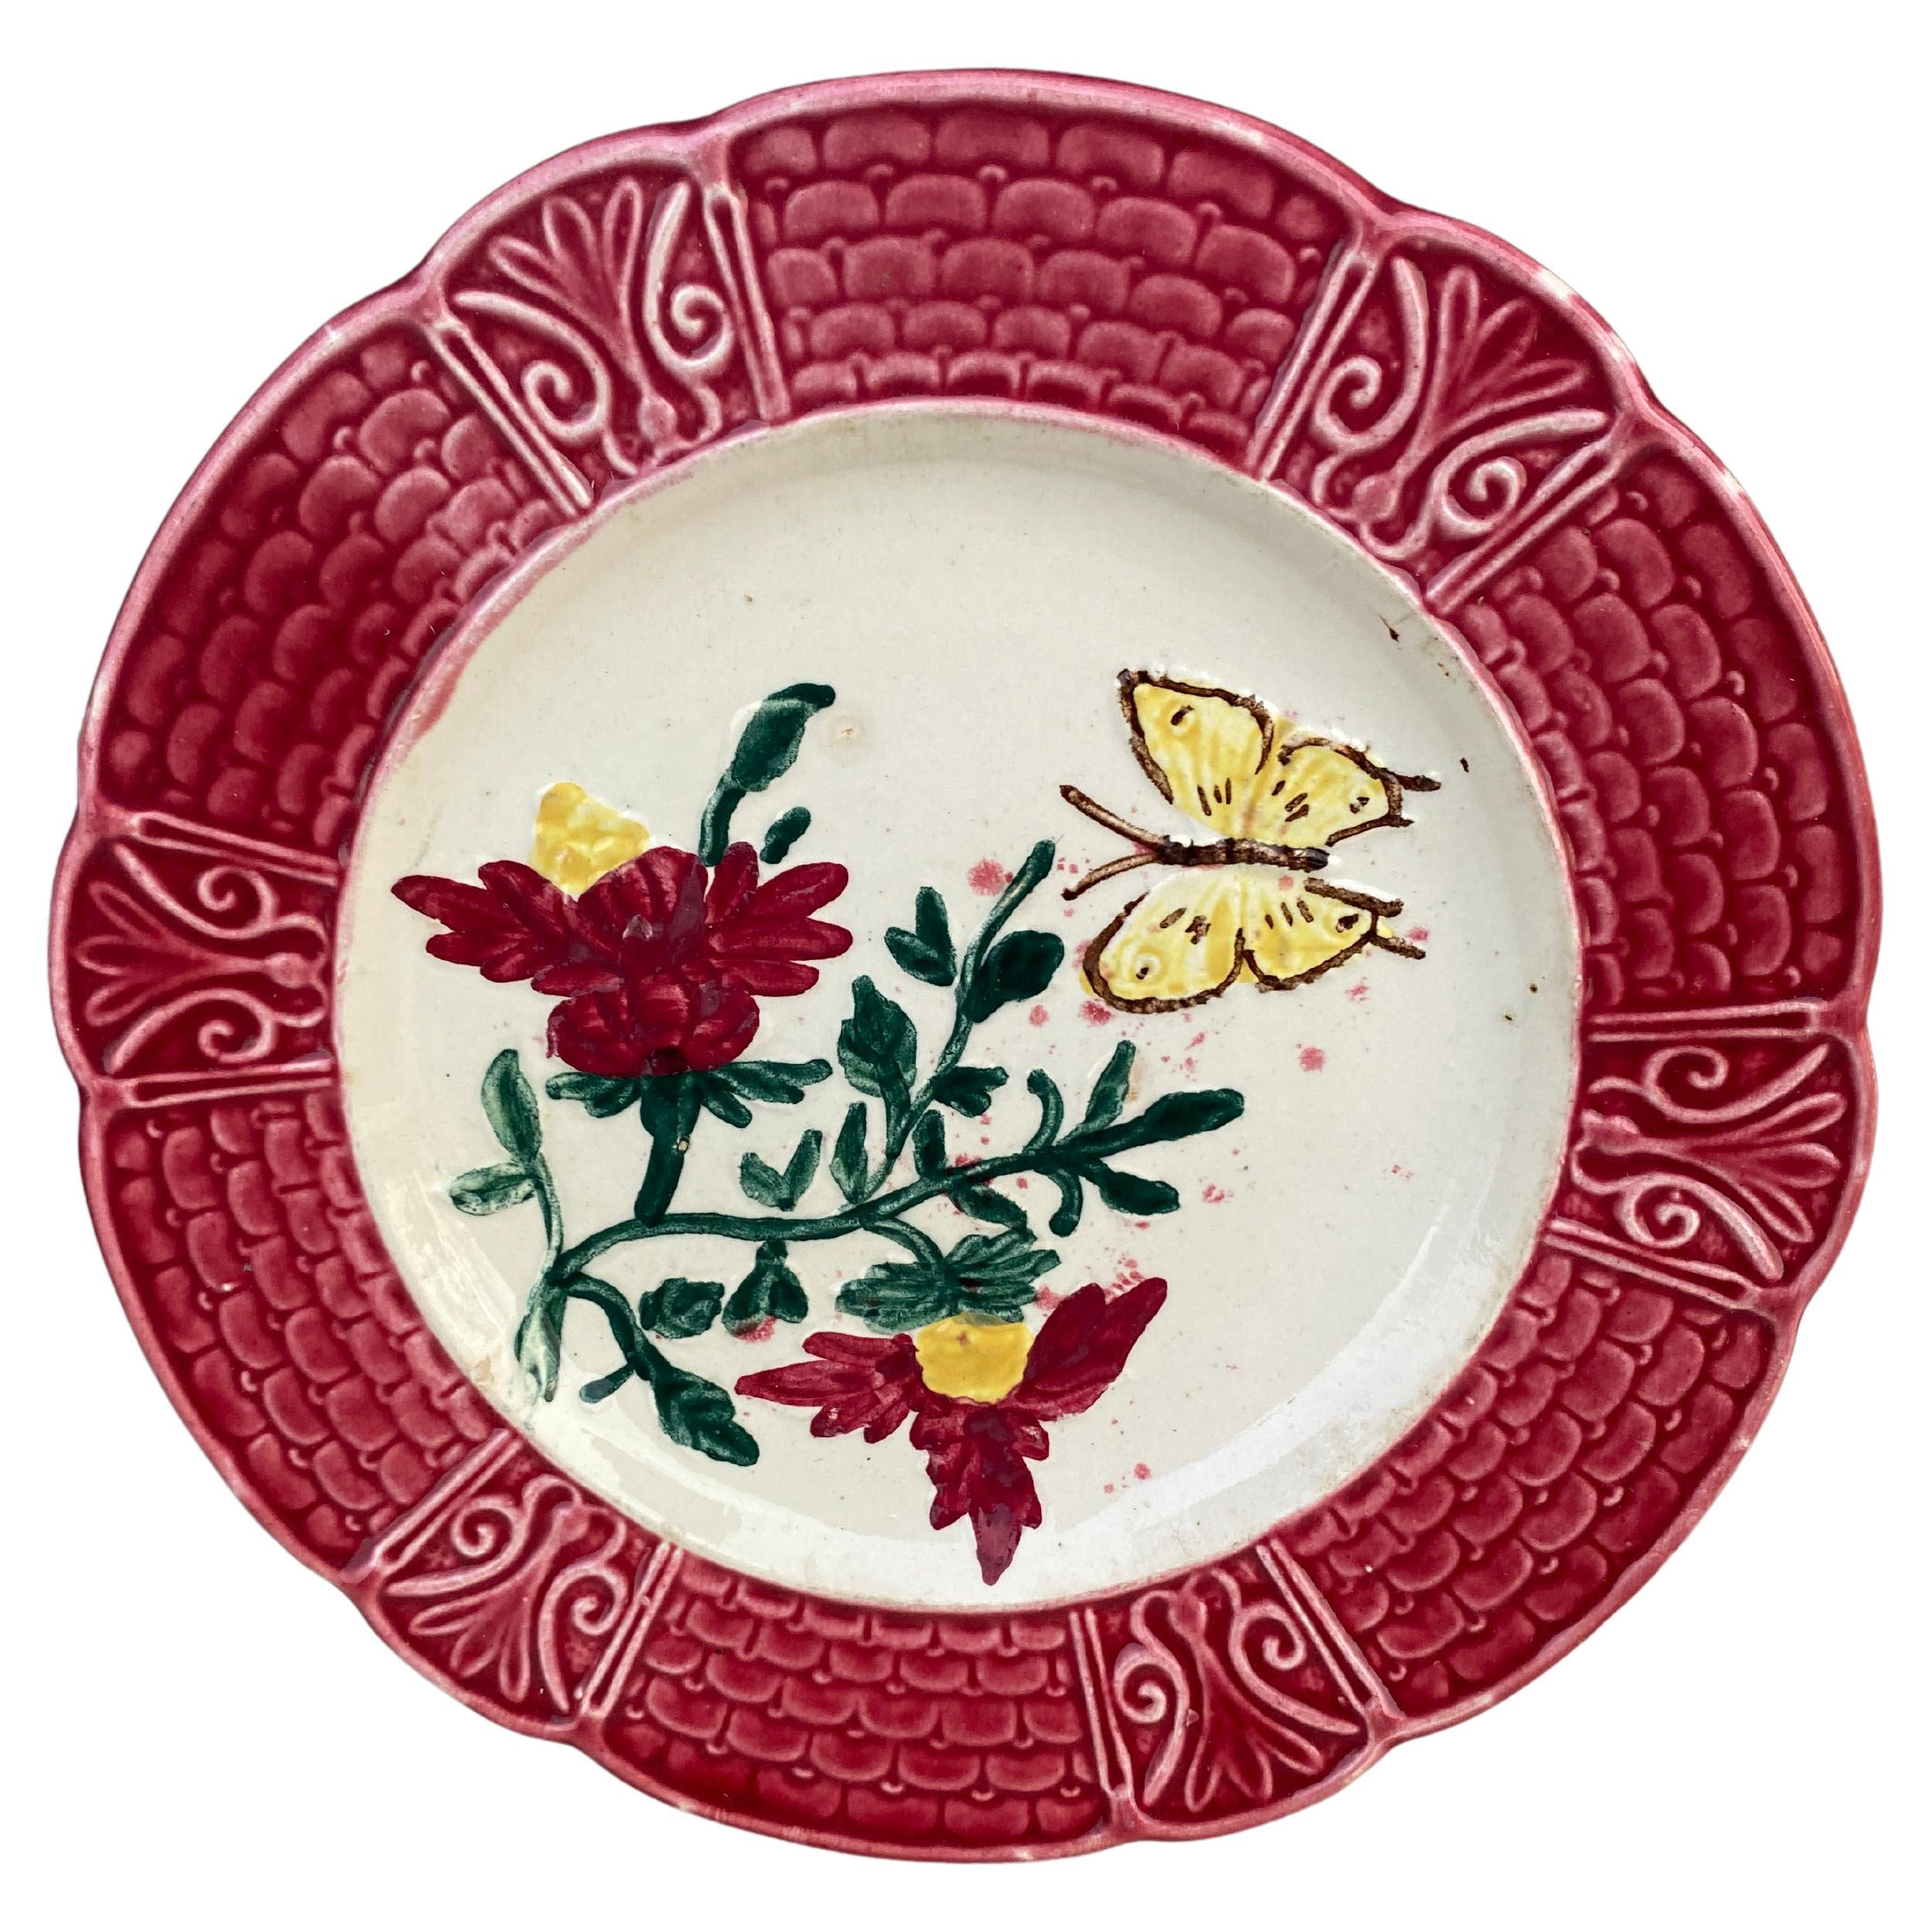 Assiette en majolique française avec fleurs et papillon, datant d'environ 1900